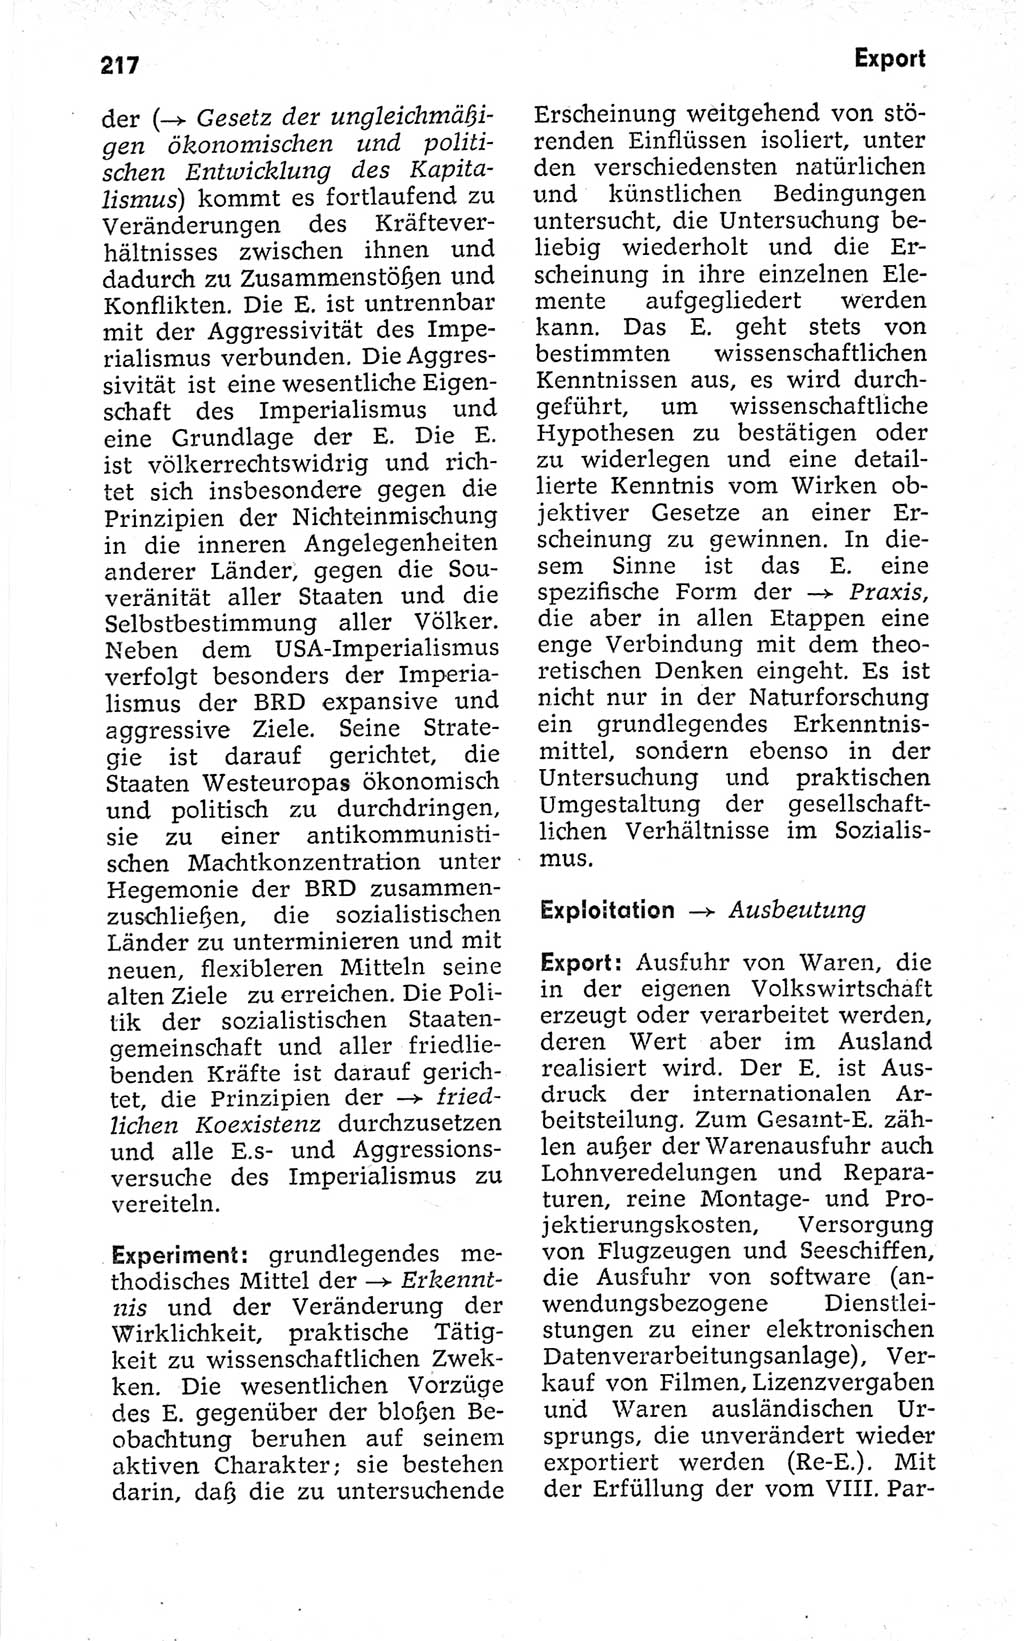 Kleines politisches Wörterbuch [Deutsche Demokratische Republik (DDR)] 1973, Seite 217 (Kl. pol. Wb. DDR 1973, S. 217)